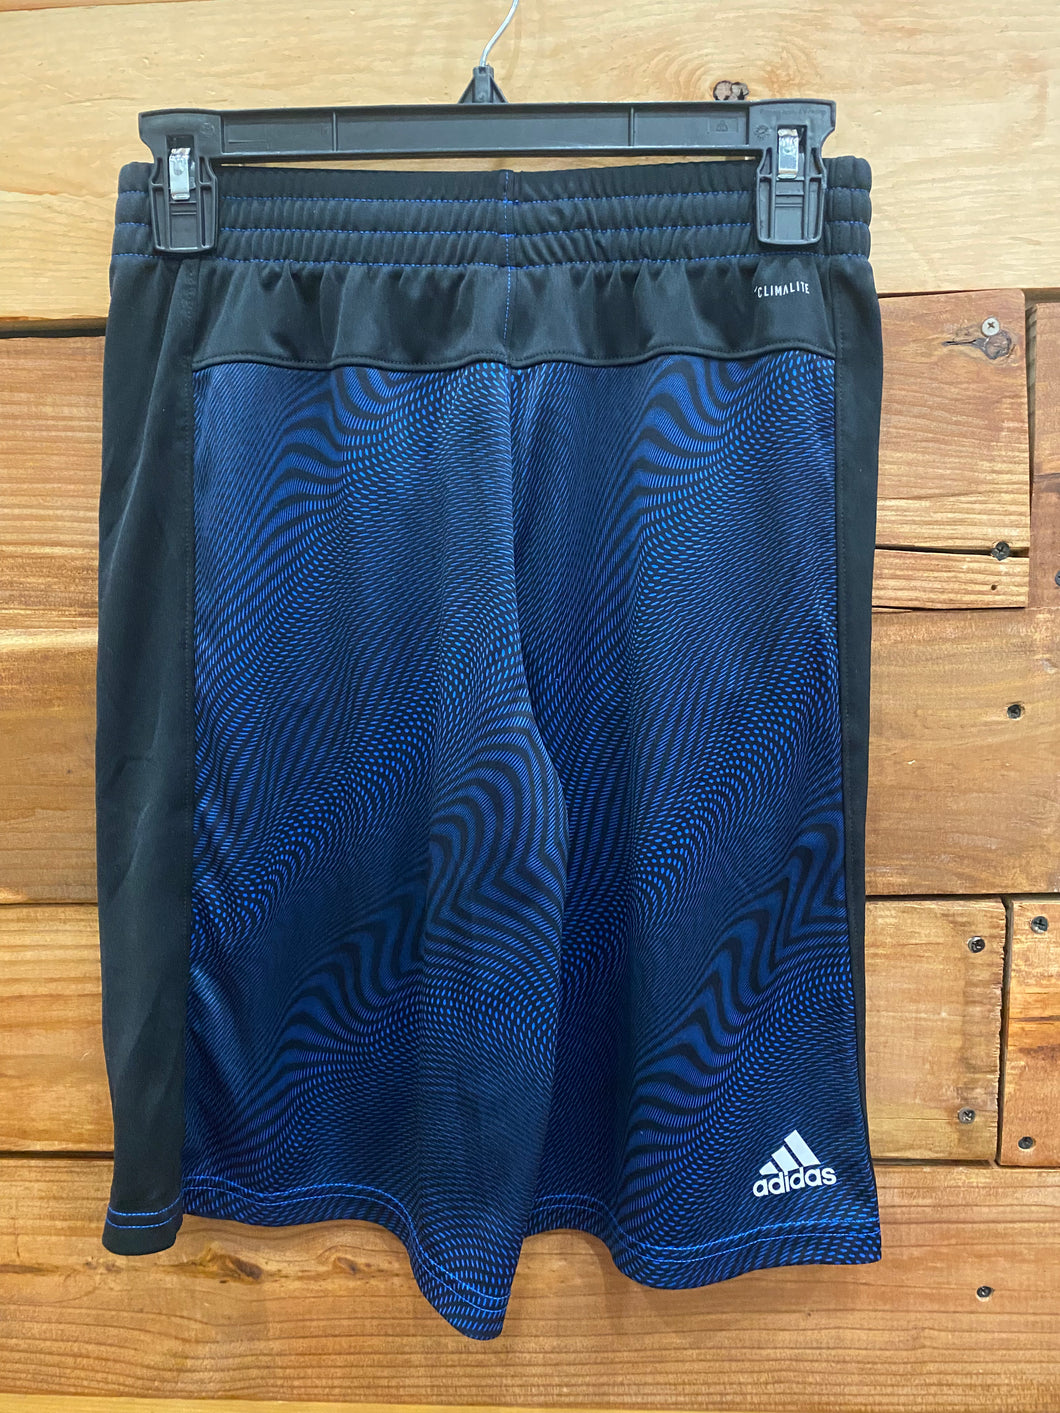 Adidas Blue Shorts Size 14-16